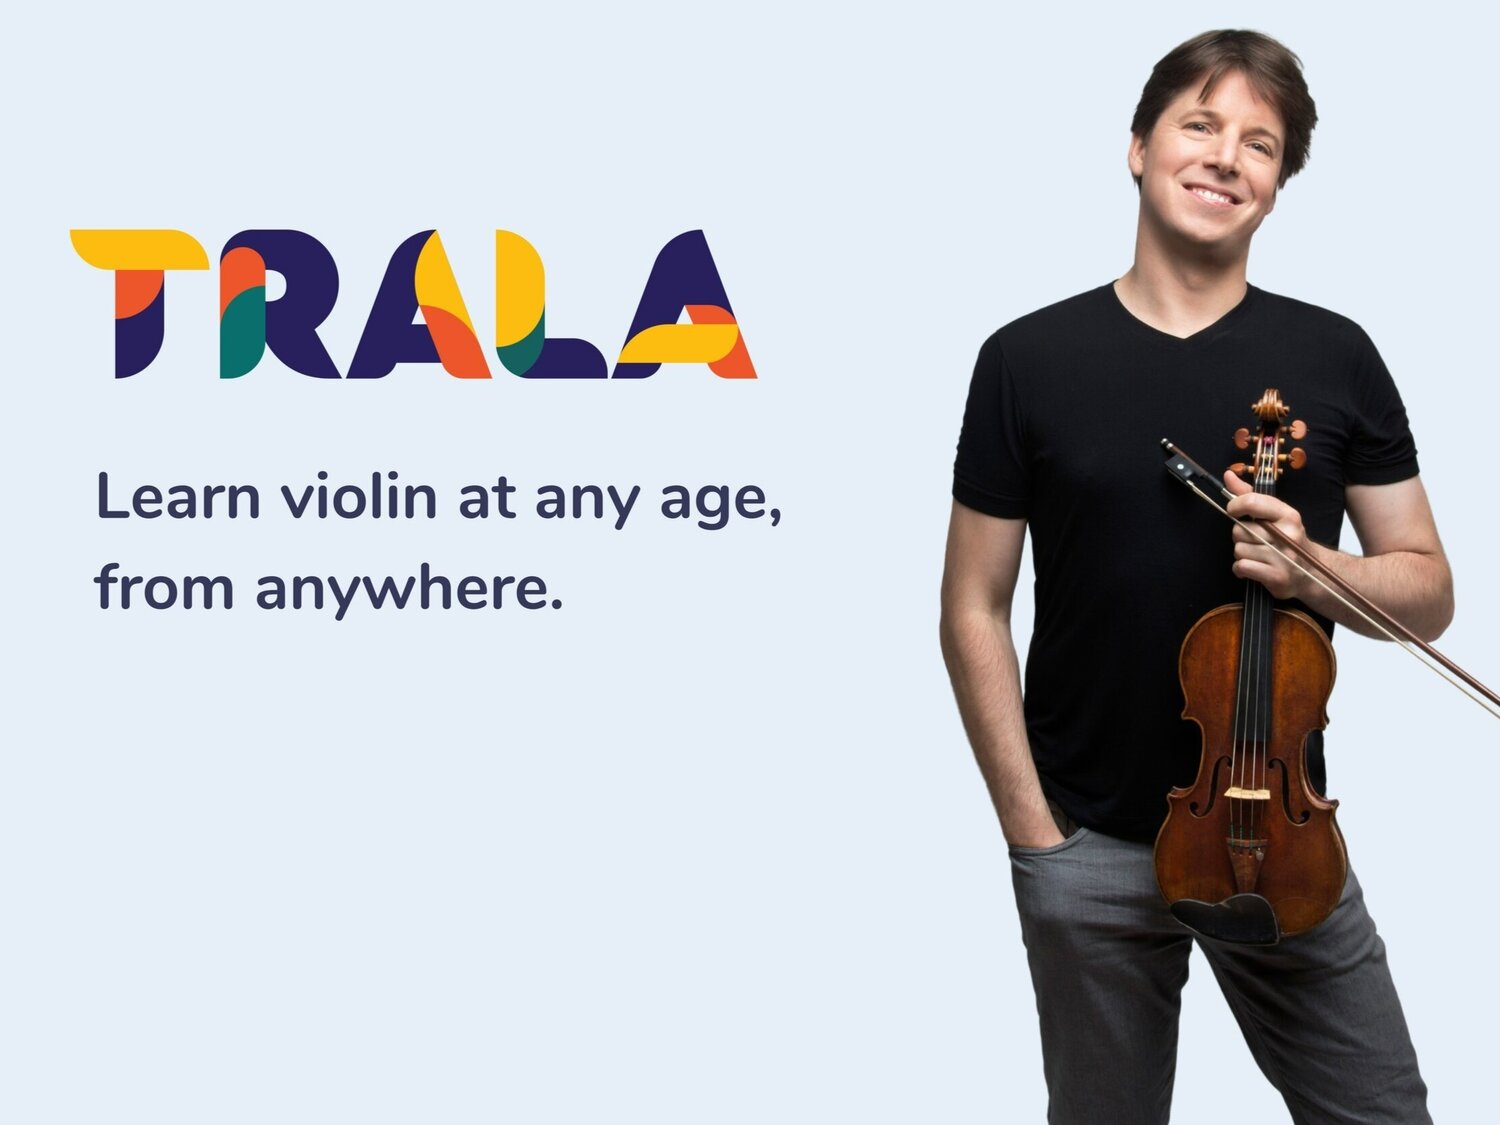 Джошуа Белл. Joshua Bell Violin. Скрипач Джошуа Белл социальные психологи. Joshua violin